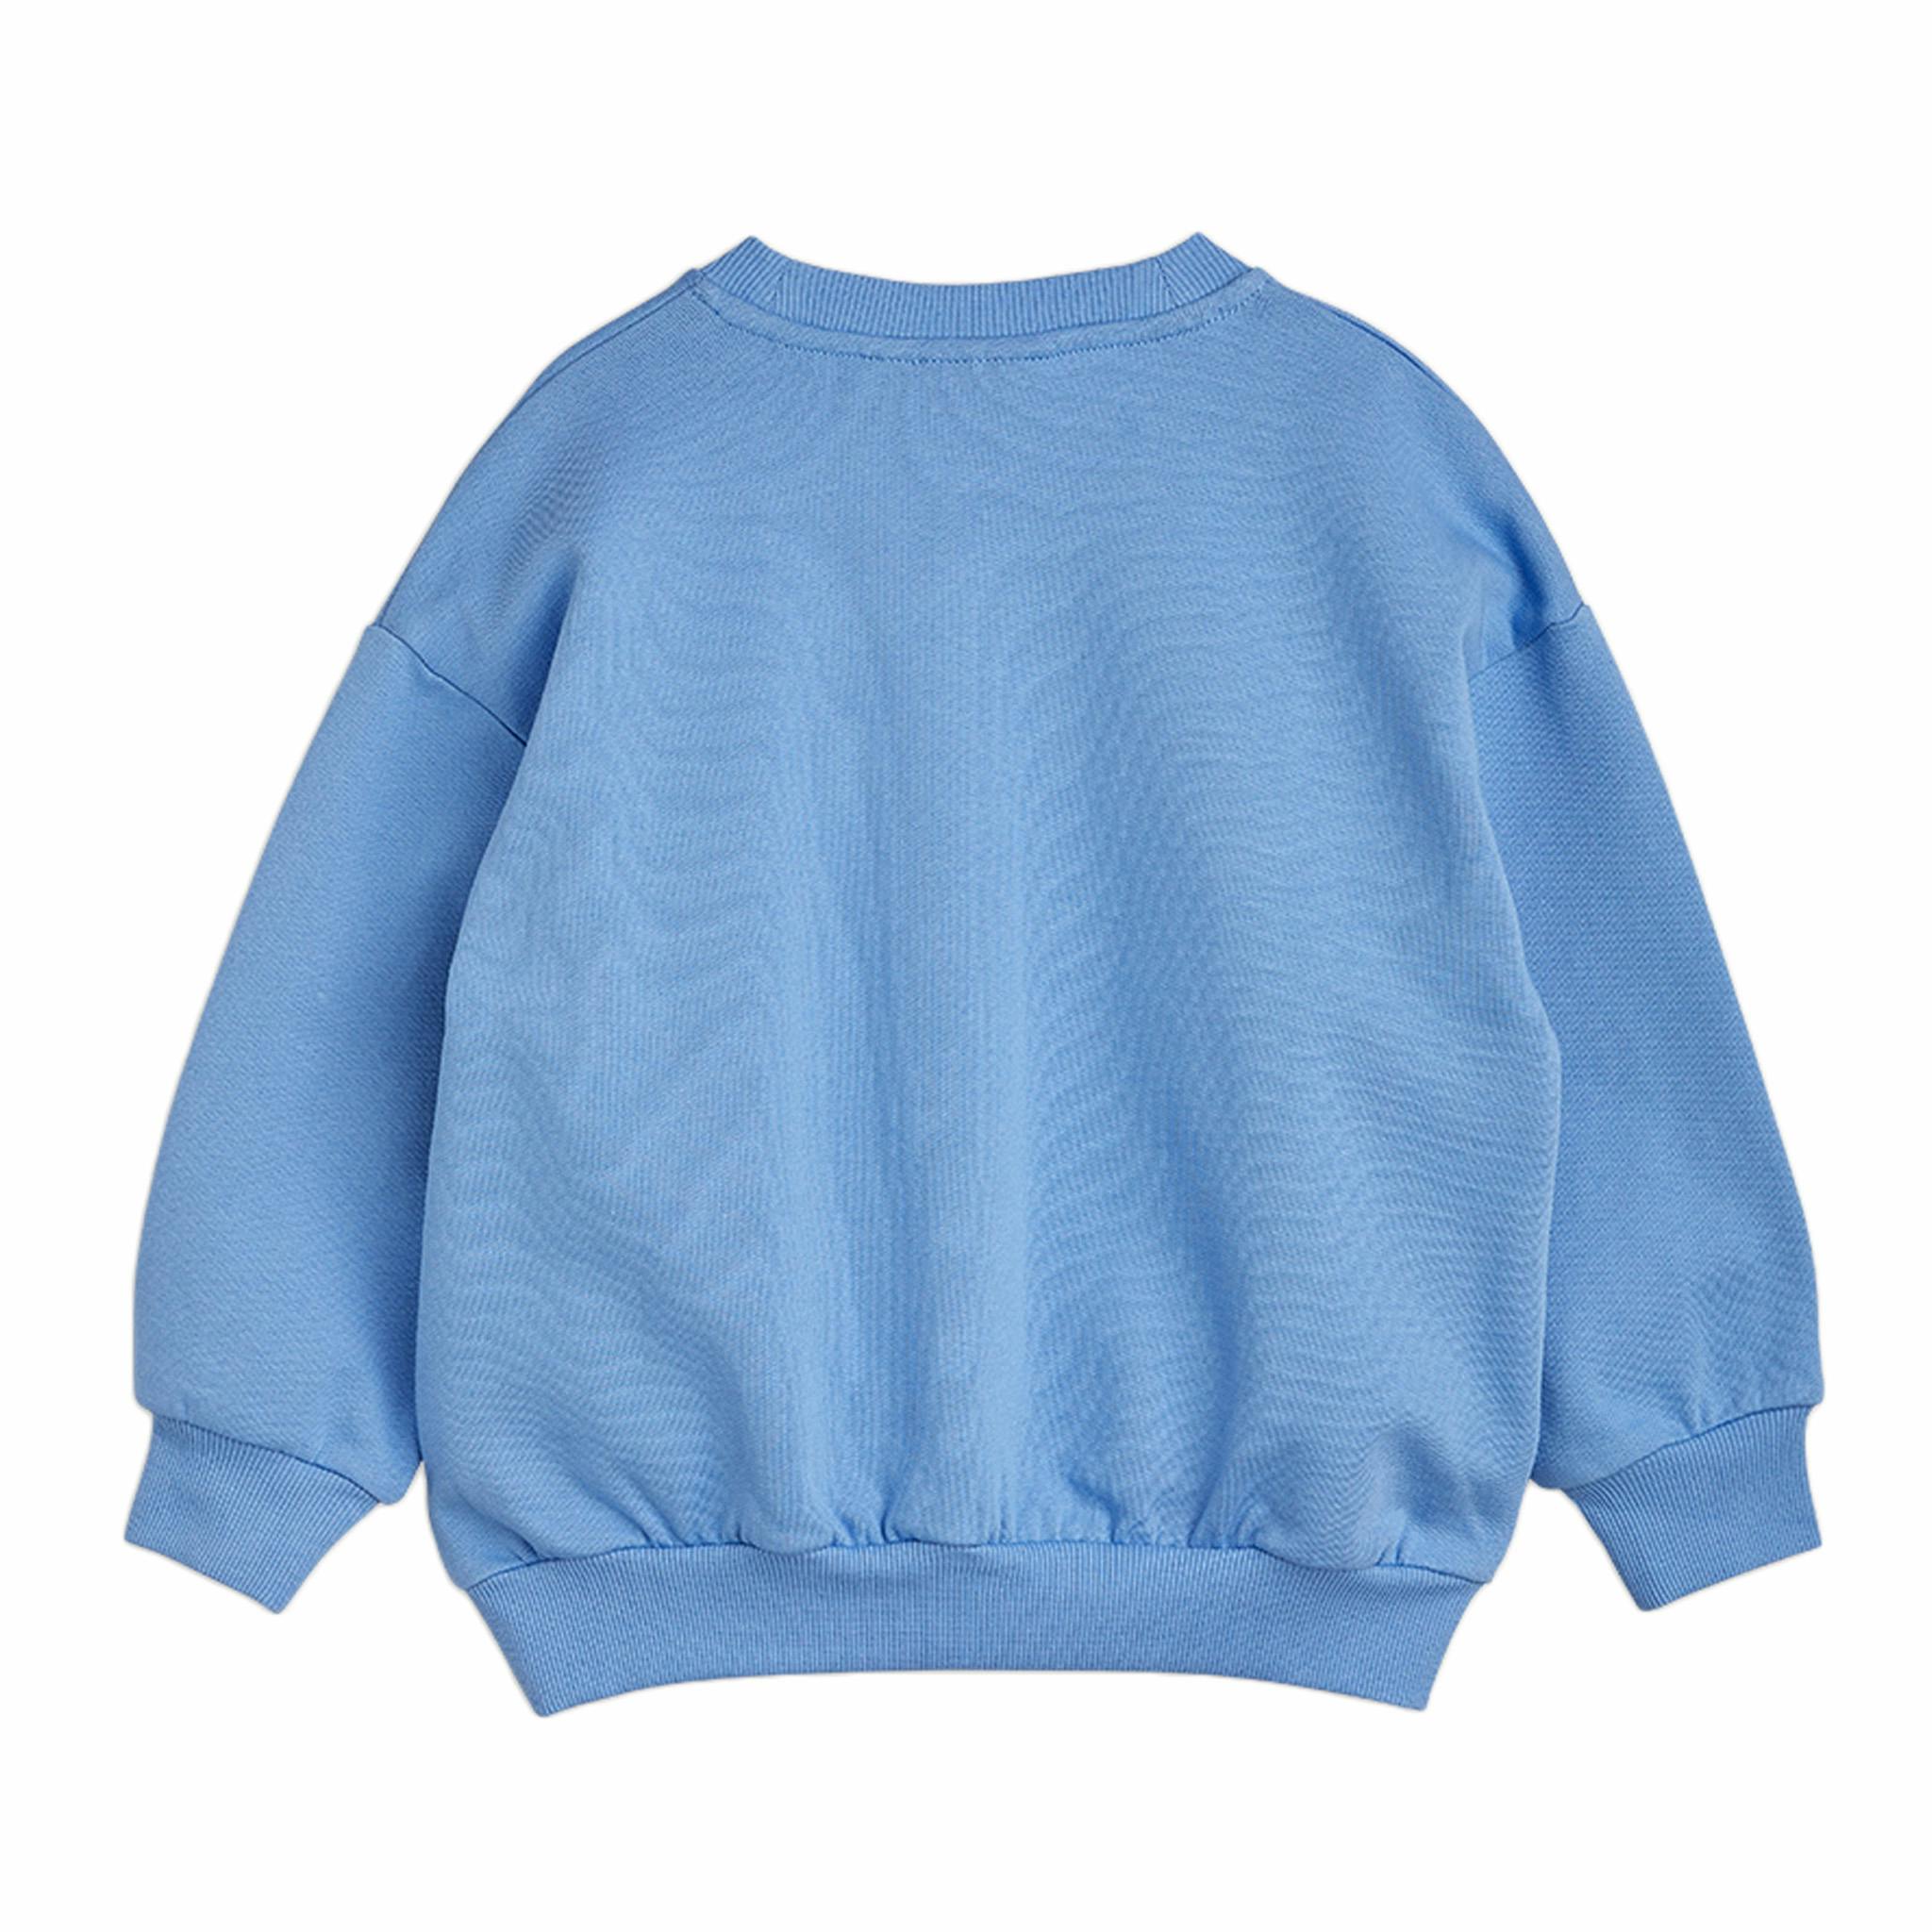 Fin sweatshirt i en underbar blå färg från Mini Rodinis kollektion Bloodhound.